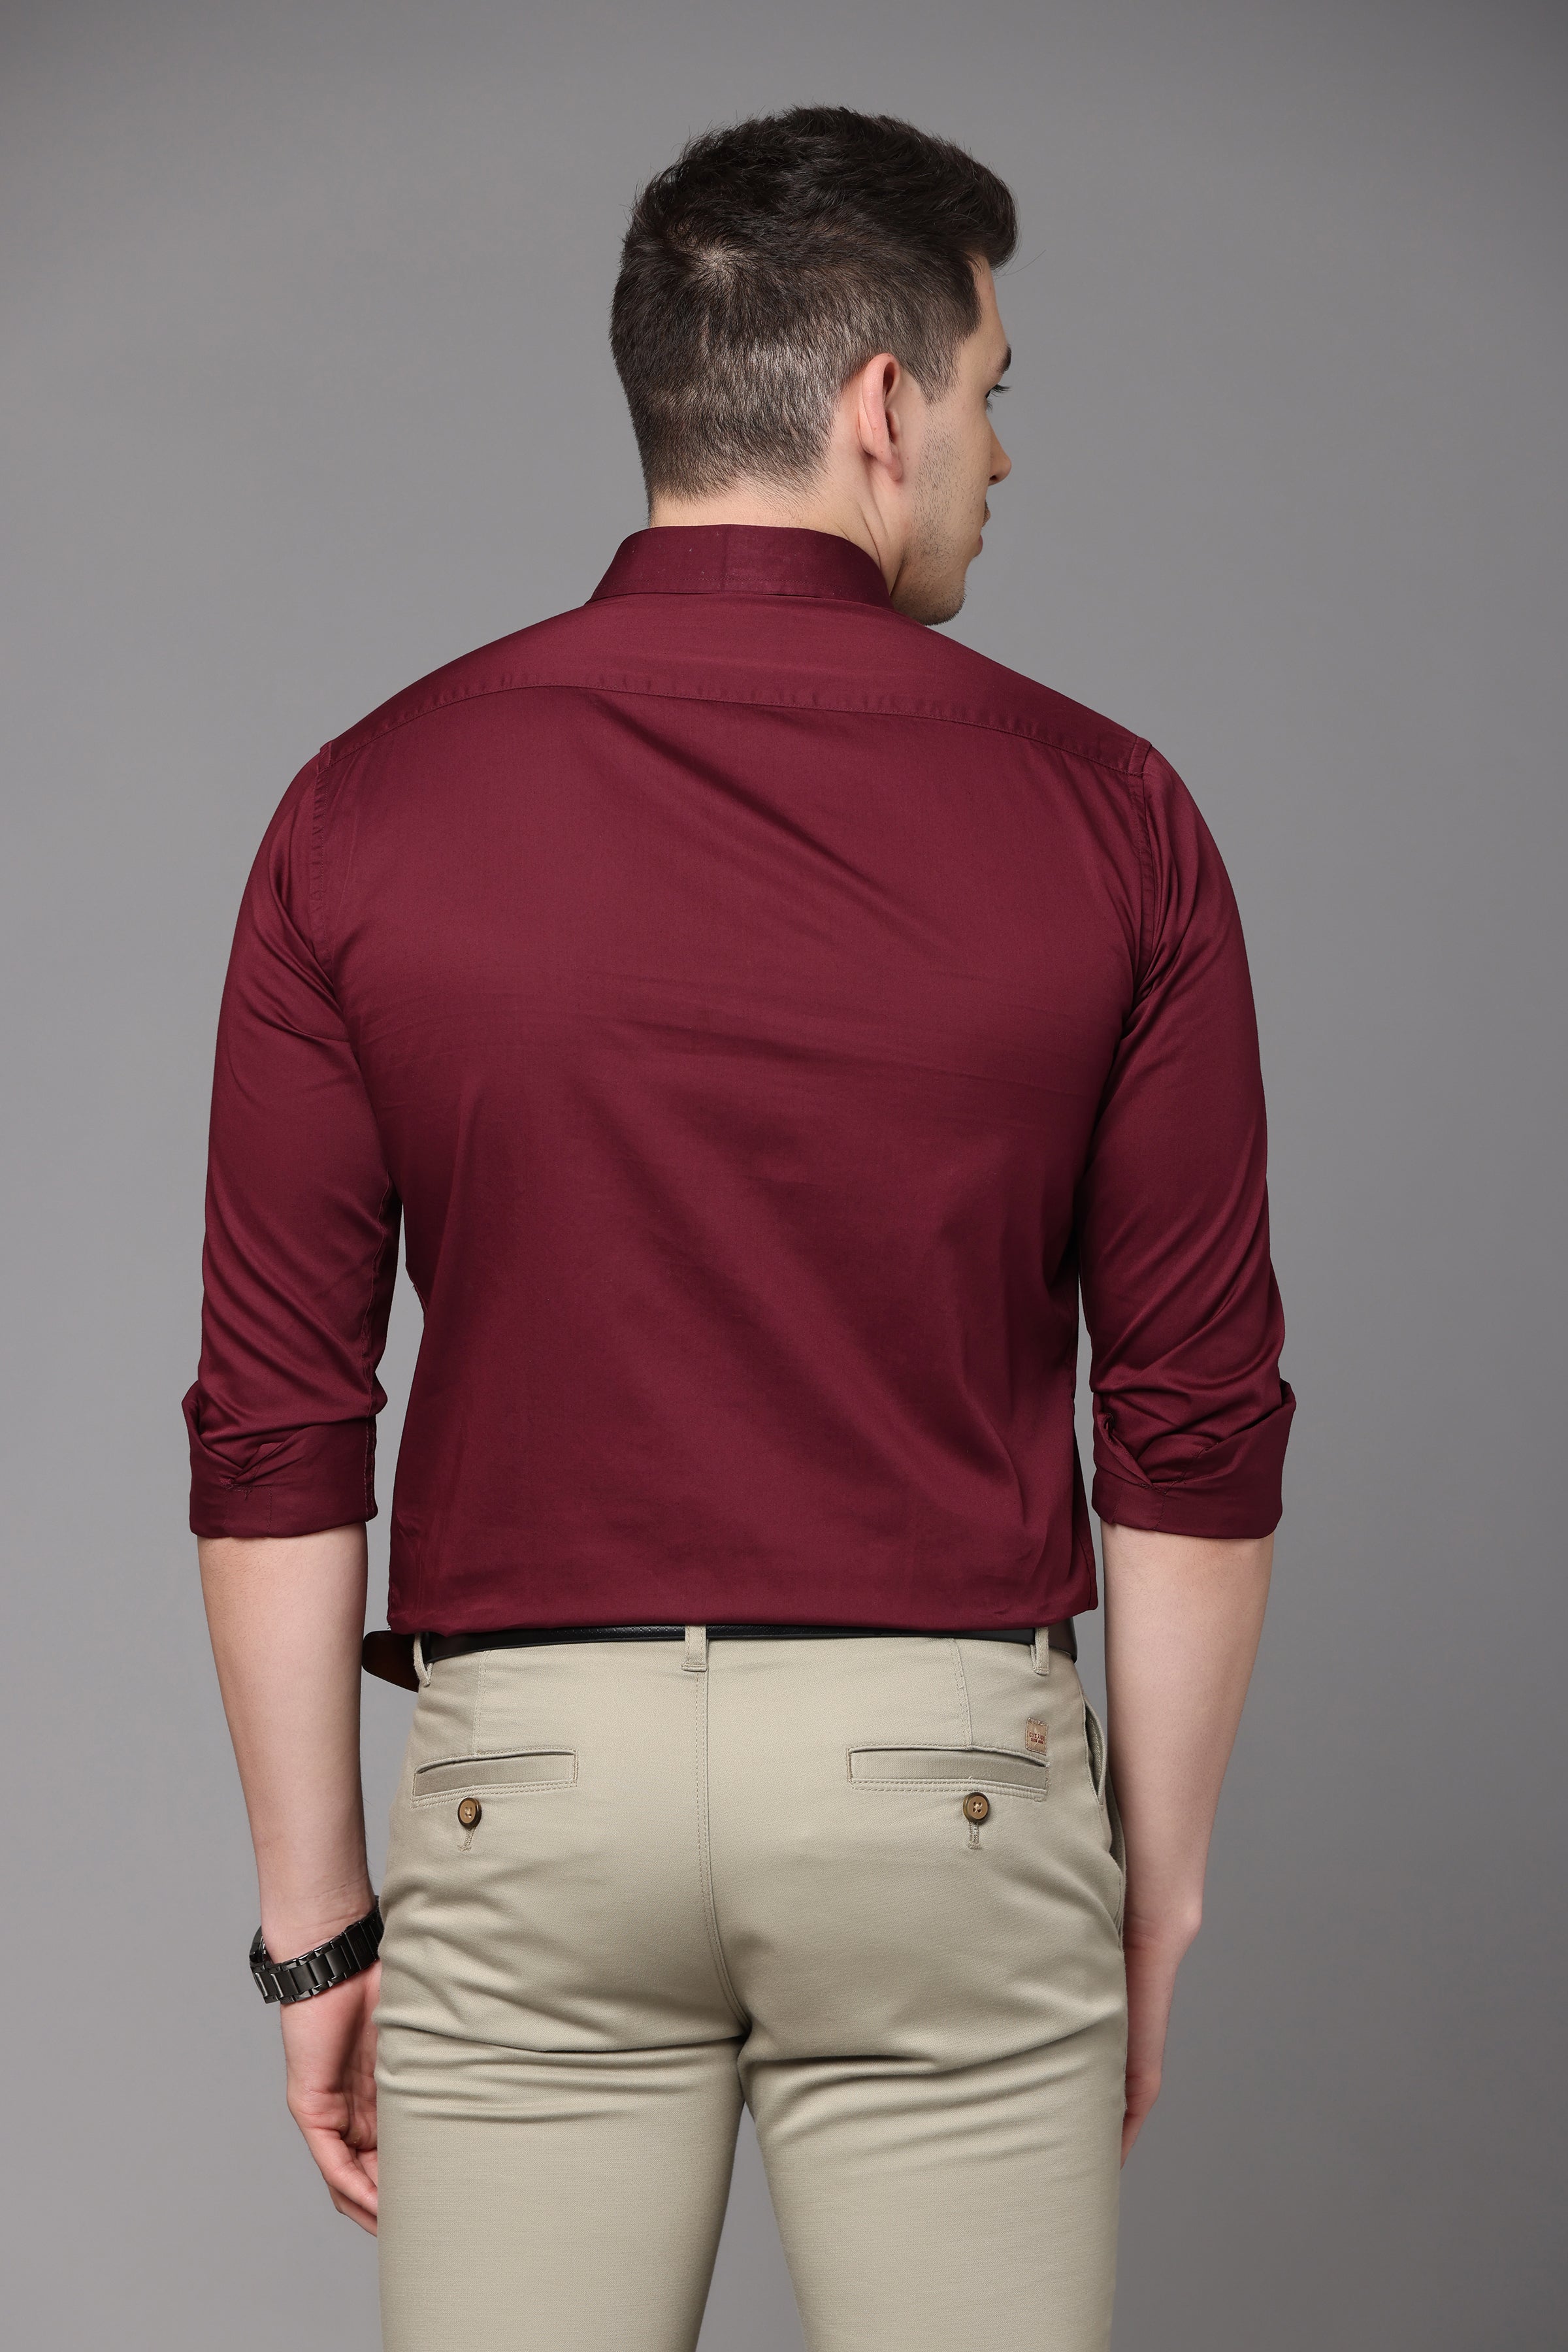 maroon plain slim fit shirt shirts kef 860575